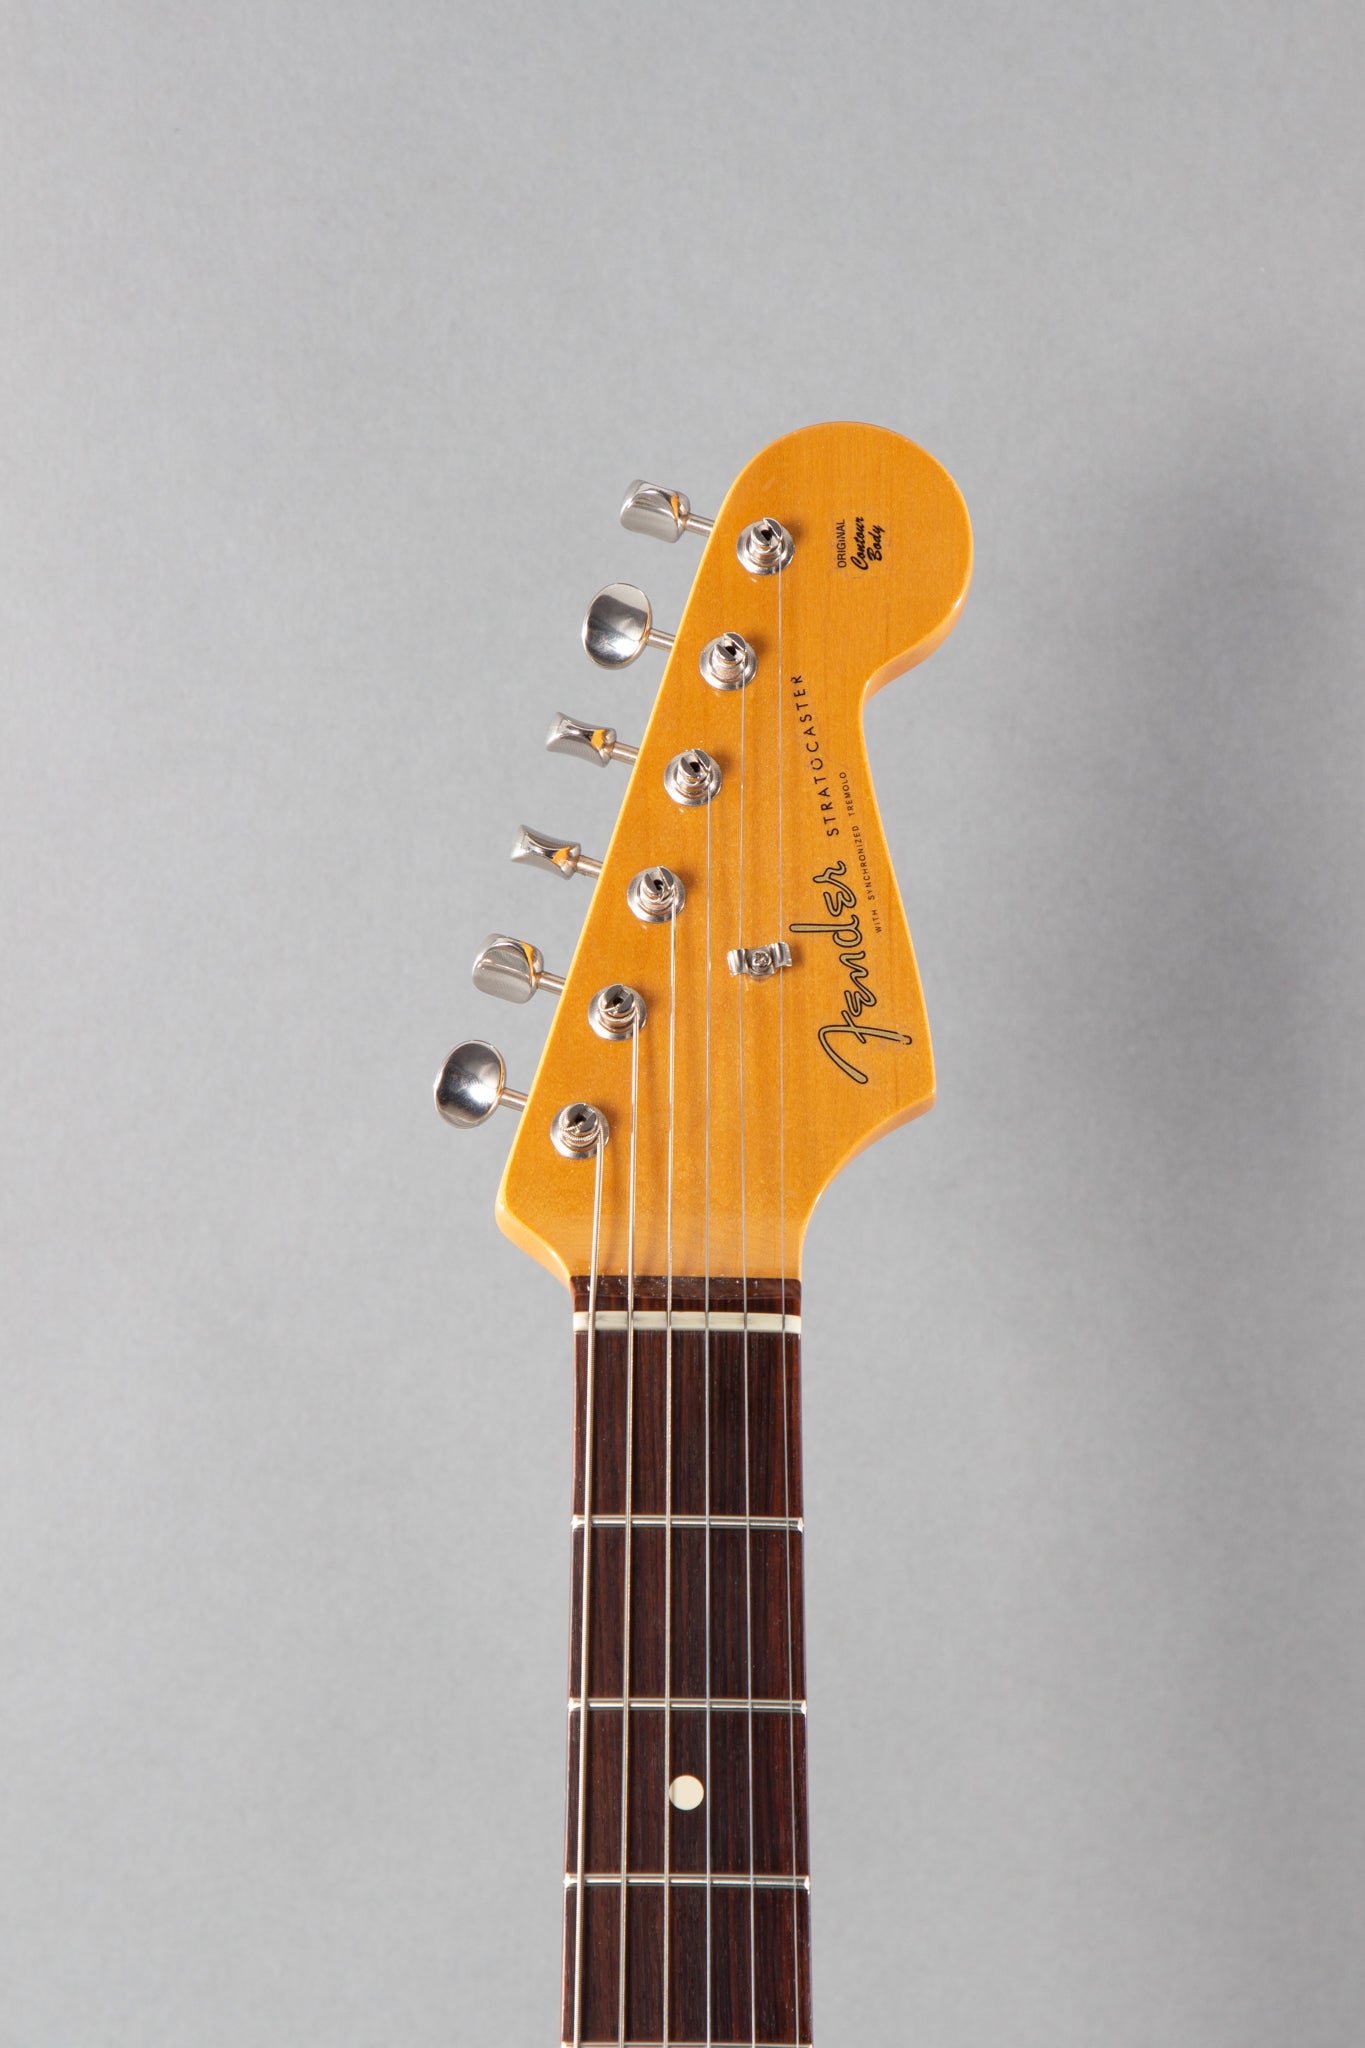 Plaque Fender Stratocaster précâblée American Vintage Hot Rod 60's